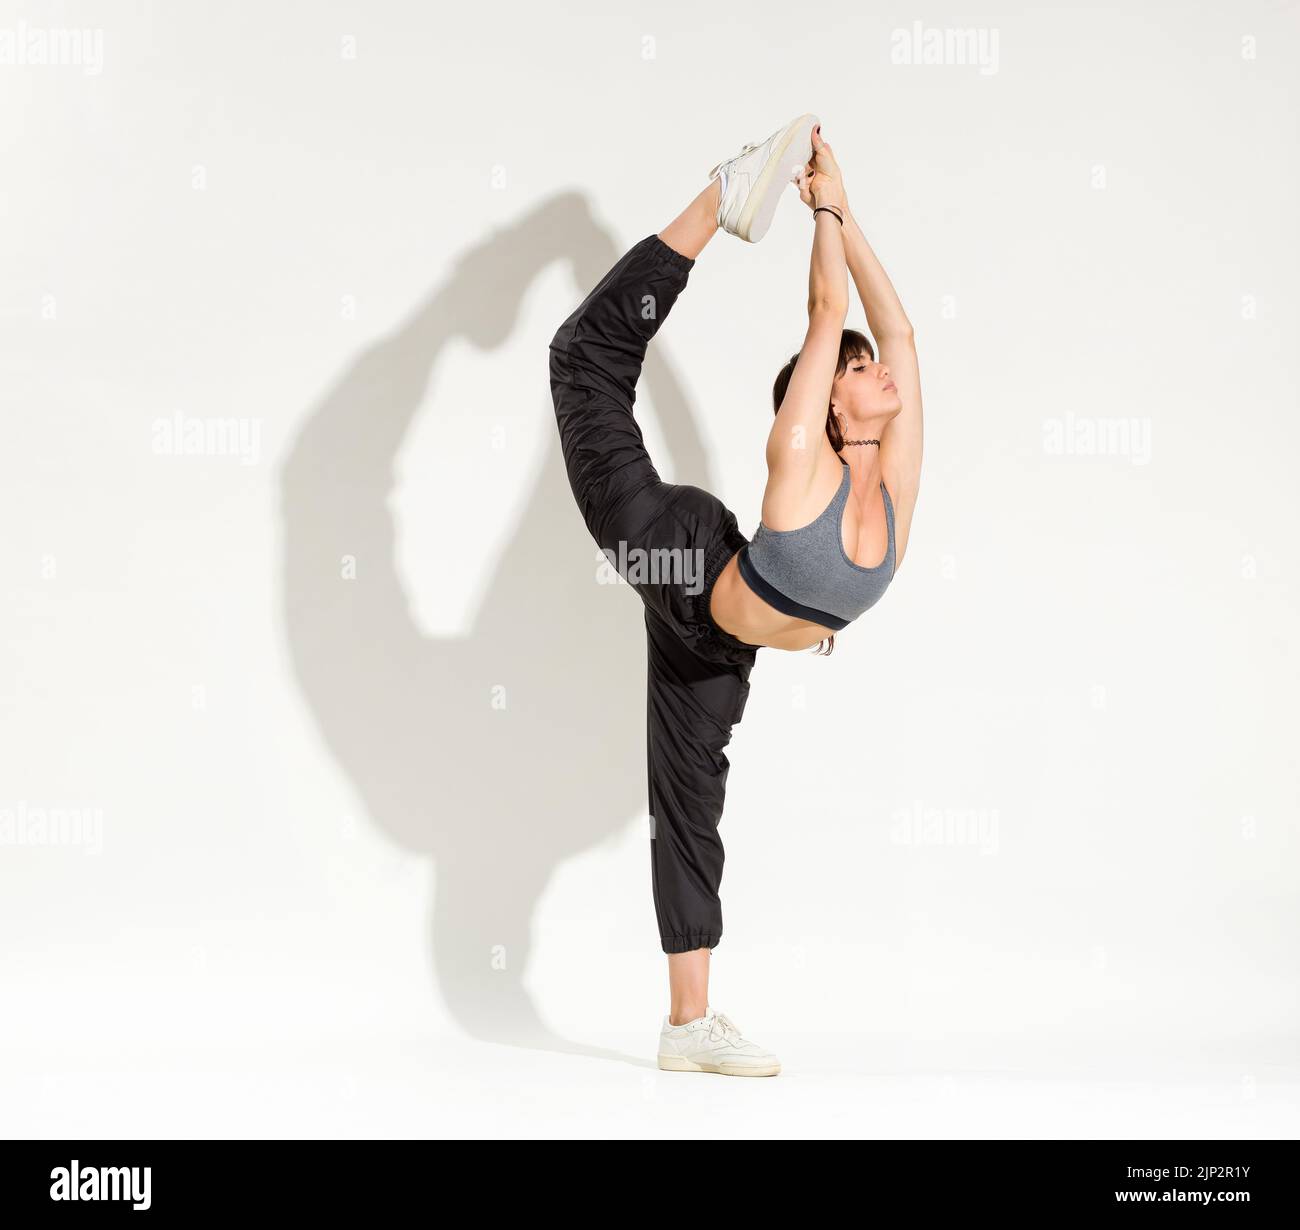 Jazz ballerina immagini e fotografie stock ad alta risoluzione - Alamy